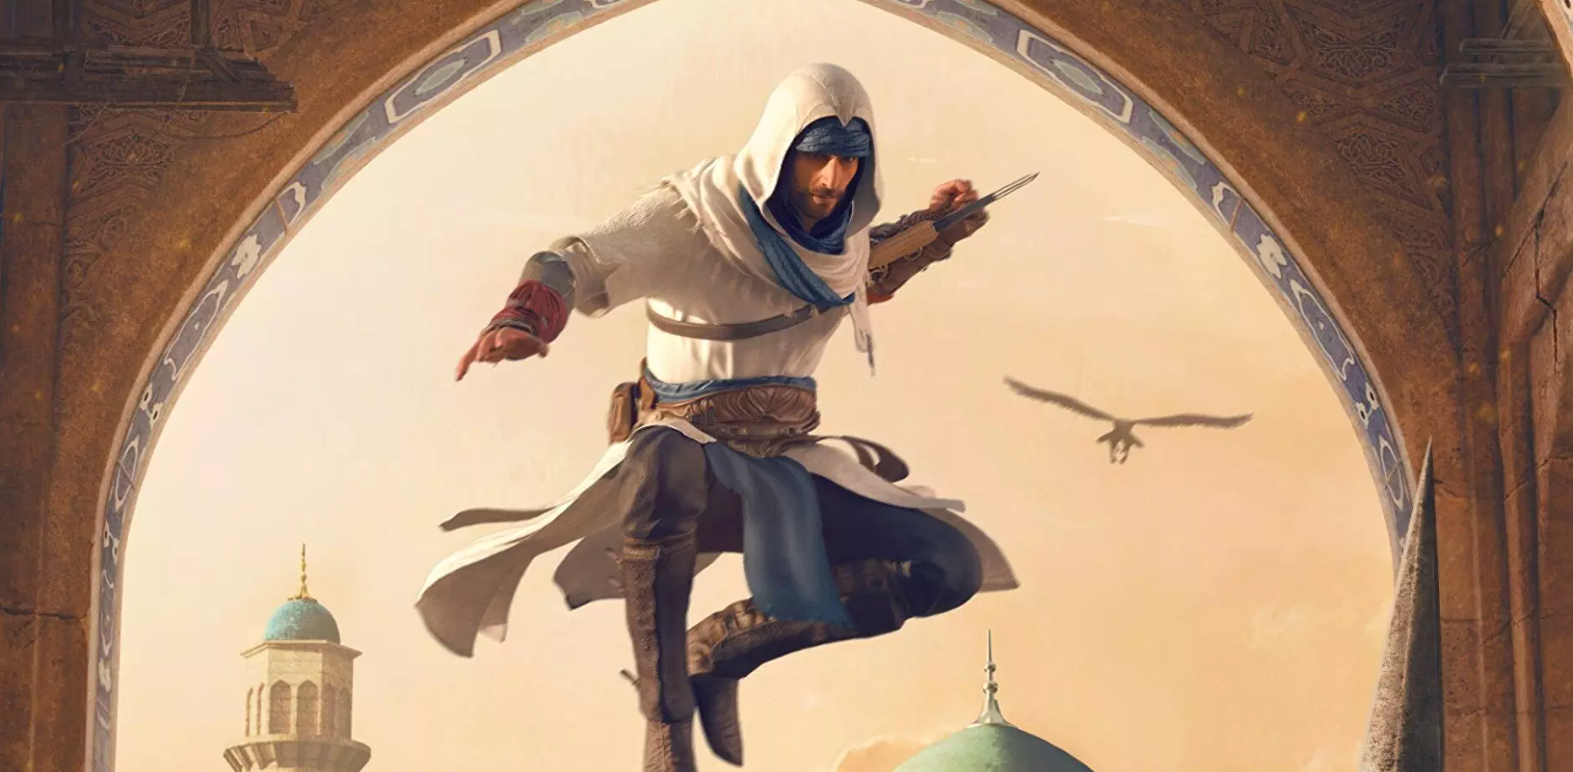 Immagine di Assassin's Creed Mirage sarà 'per adulti'? Tra i contenuti gioco d'azzardo e violenza